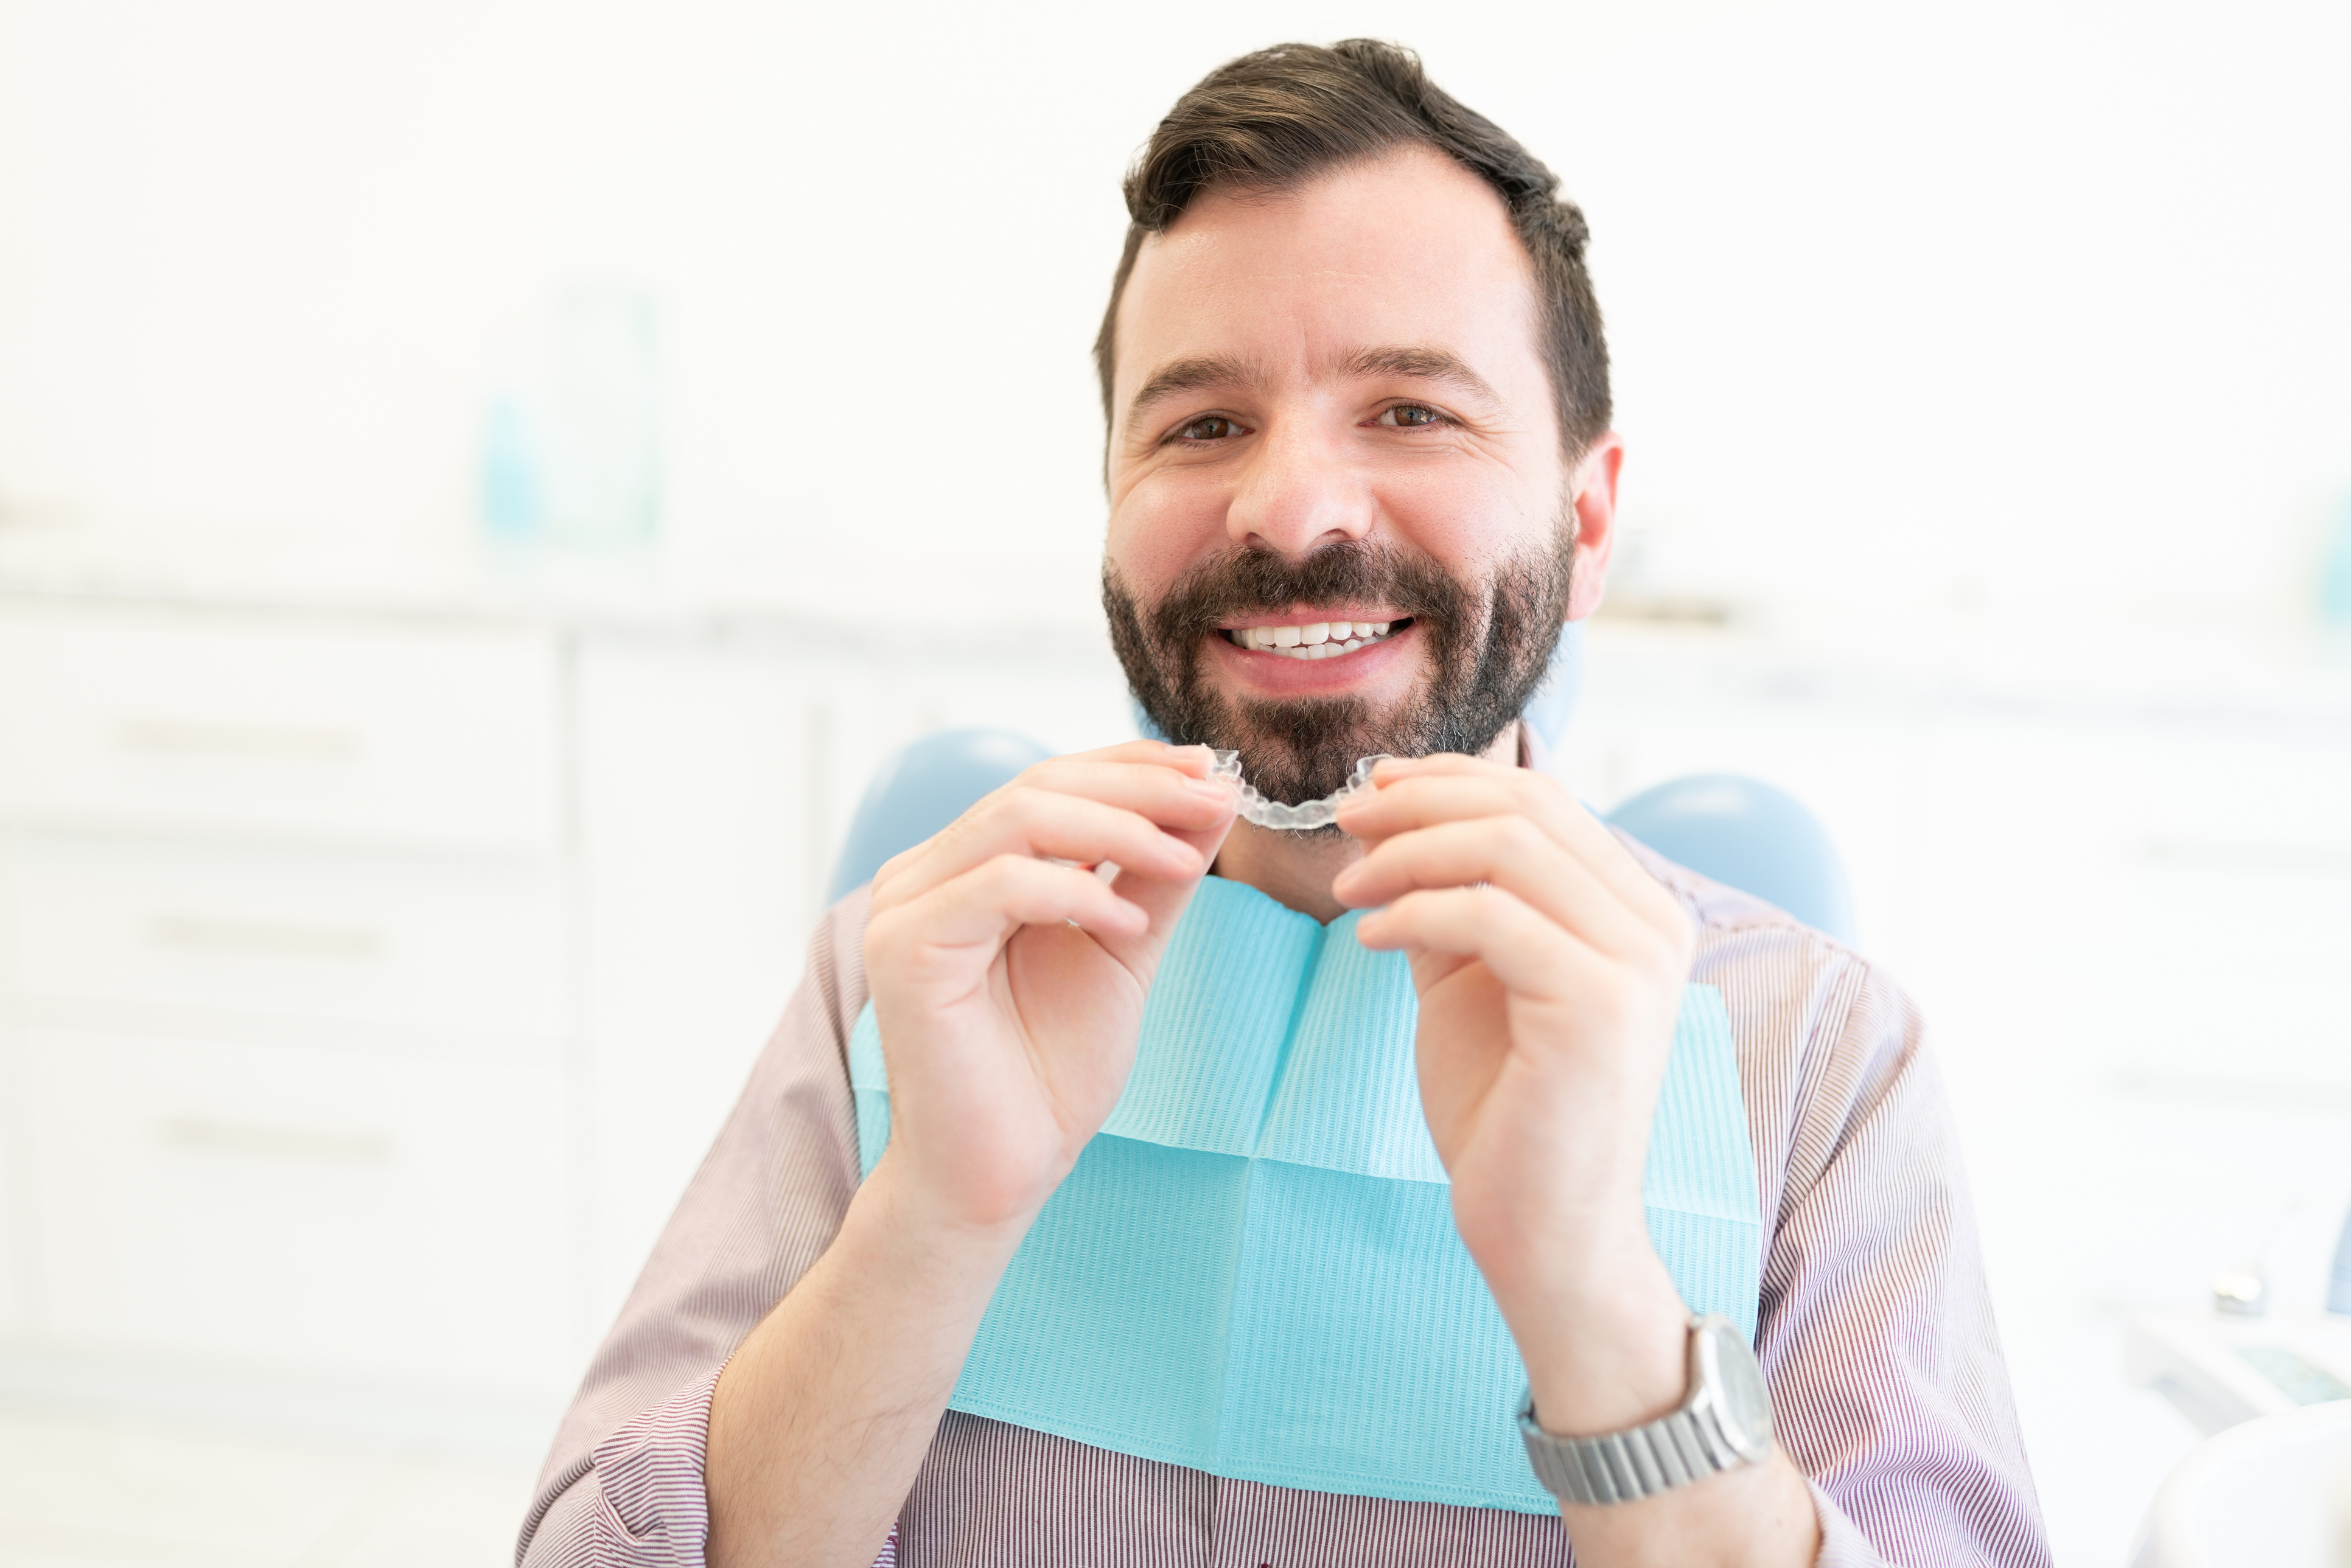 Les gouttières d'alignement , un traitement orthodontique revolutionnaire